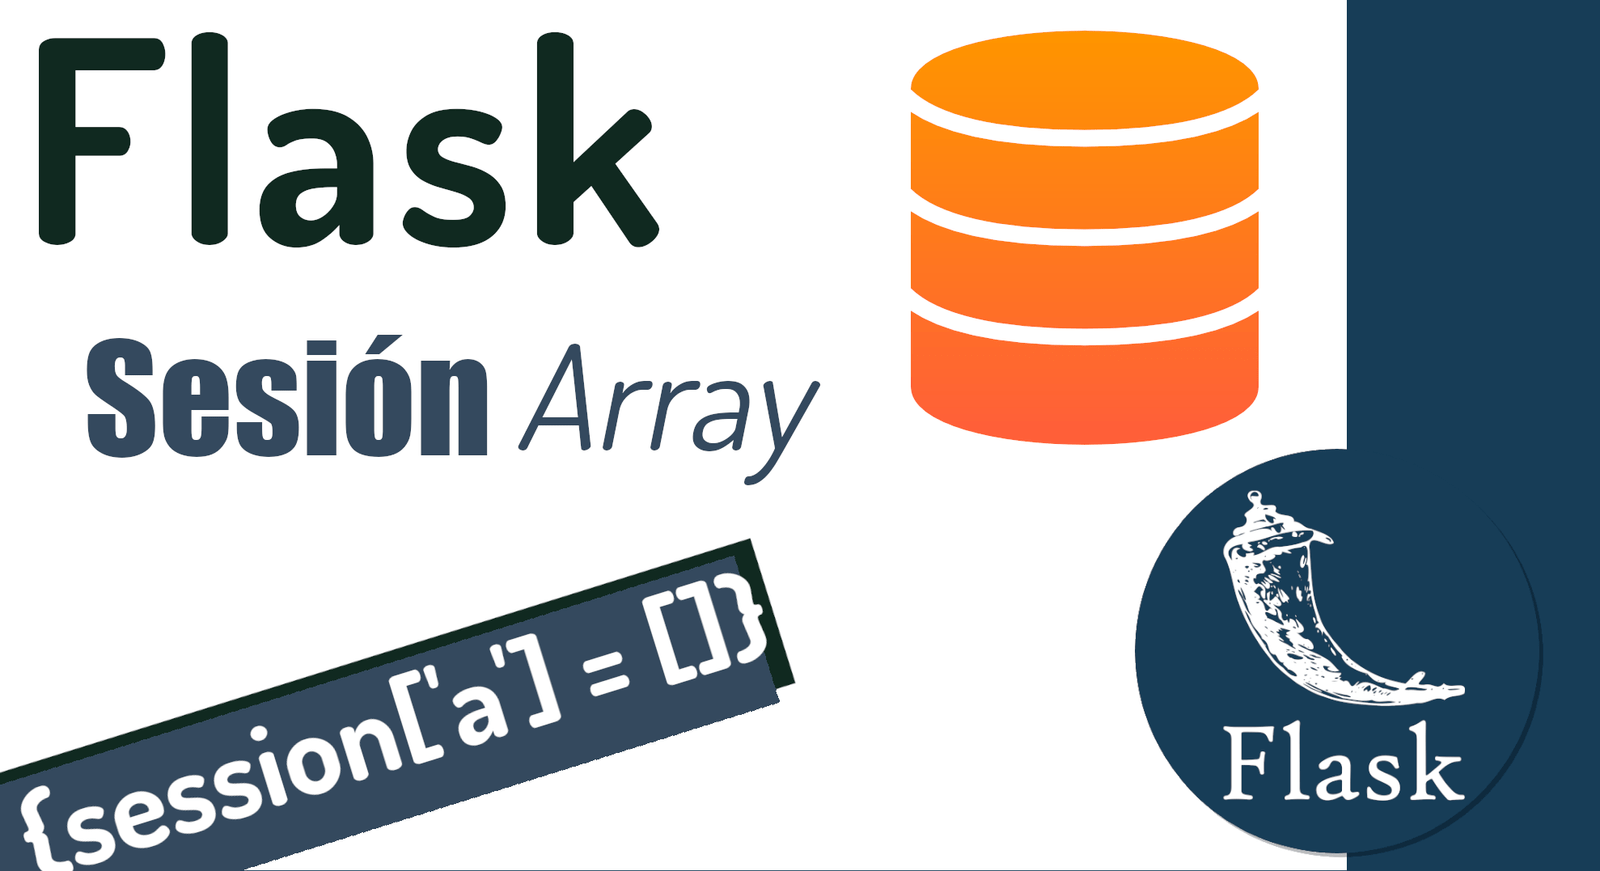 Cómo agregar más de un elemento a la sesión en Flask mediante arrays